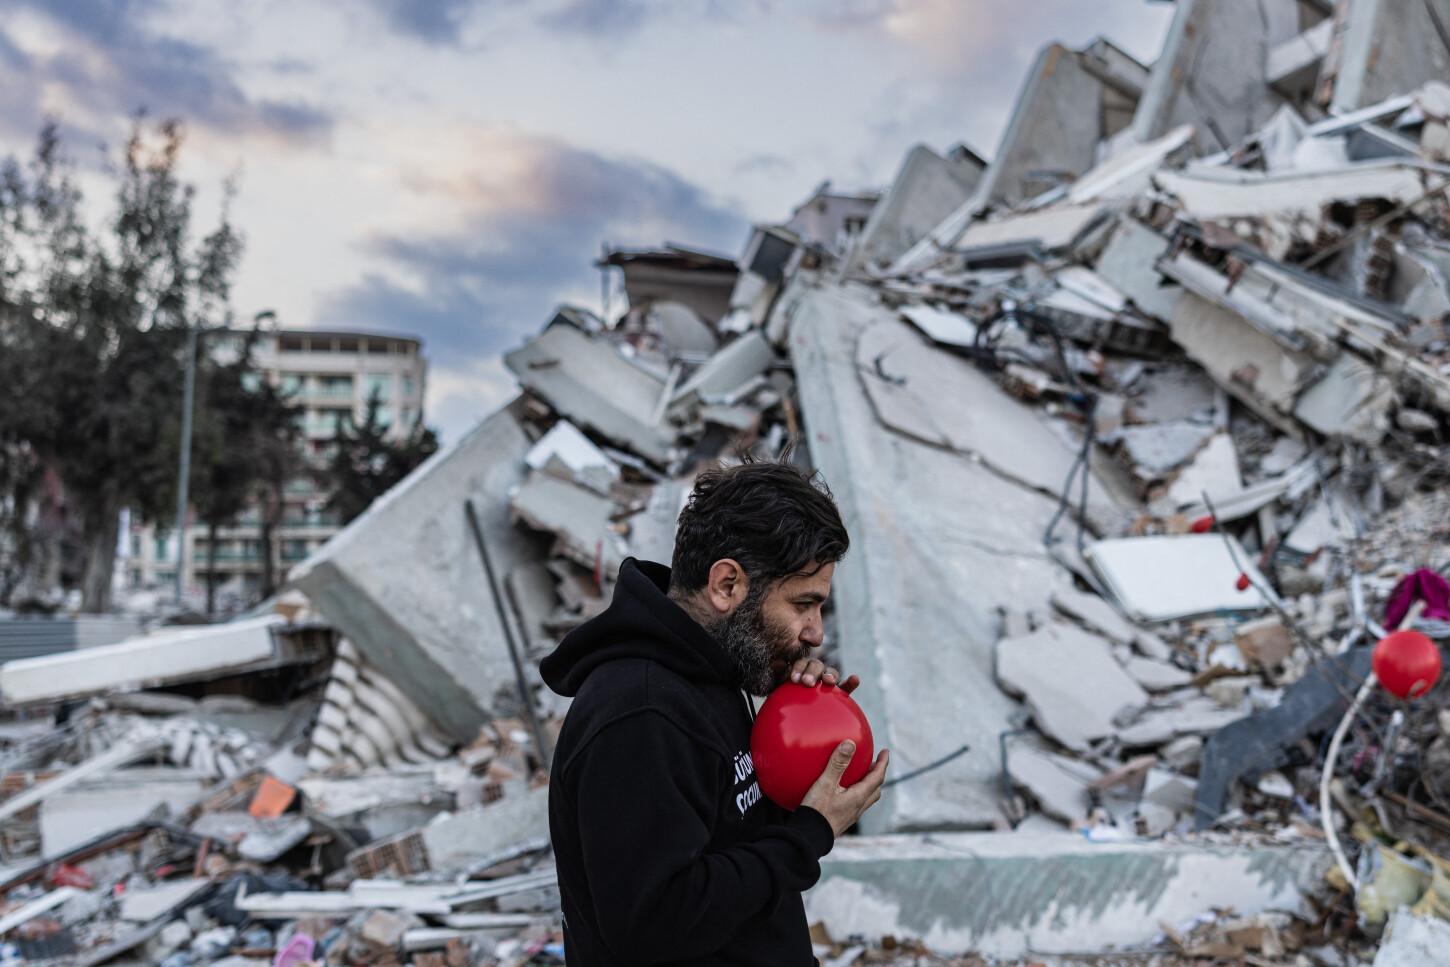 Ocho días después del terremoto en Turquía, un hombre de casi cuarenta años comenzó a atar globos a las ruinas de la despoblada ciudad de 400.000 habitantes, donde el ruido de las excavadoras y las nubes de polvo dominan toda forma de vida.